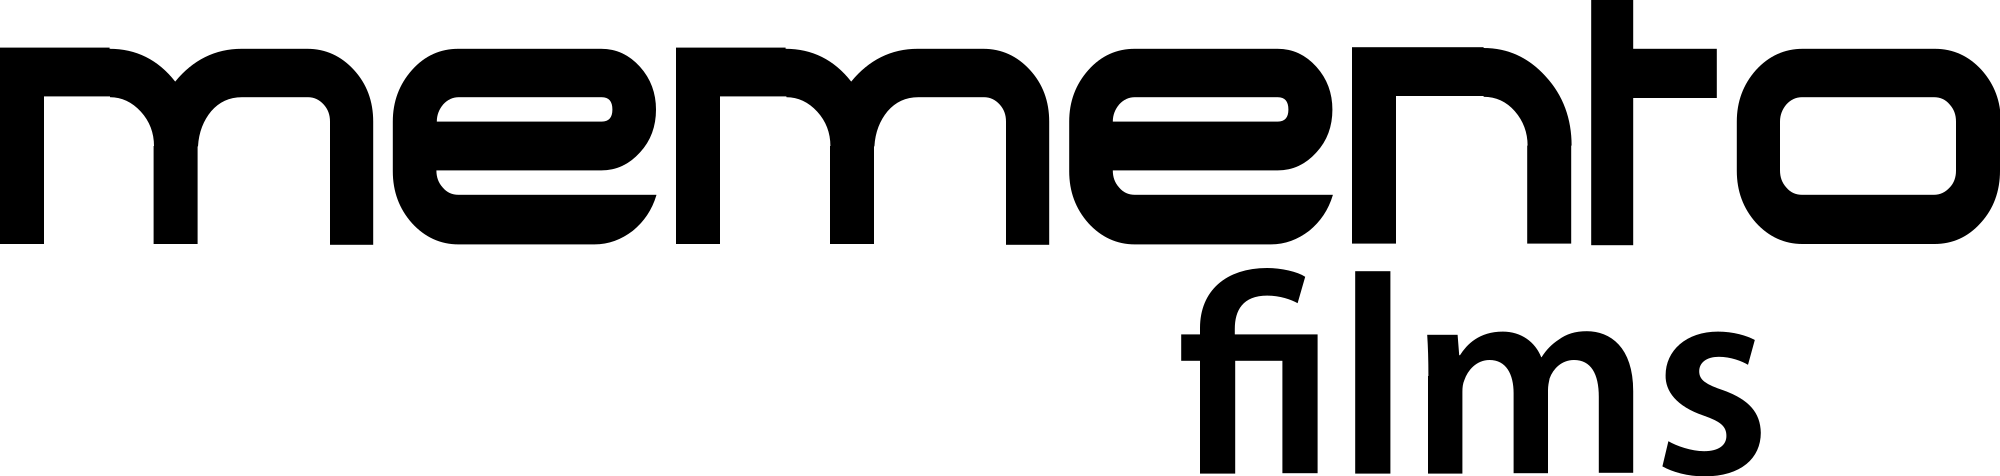 Memento Films Production Logo